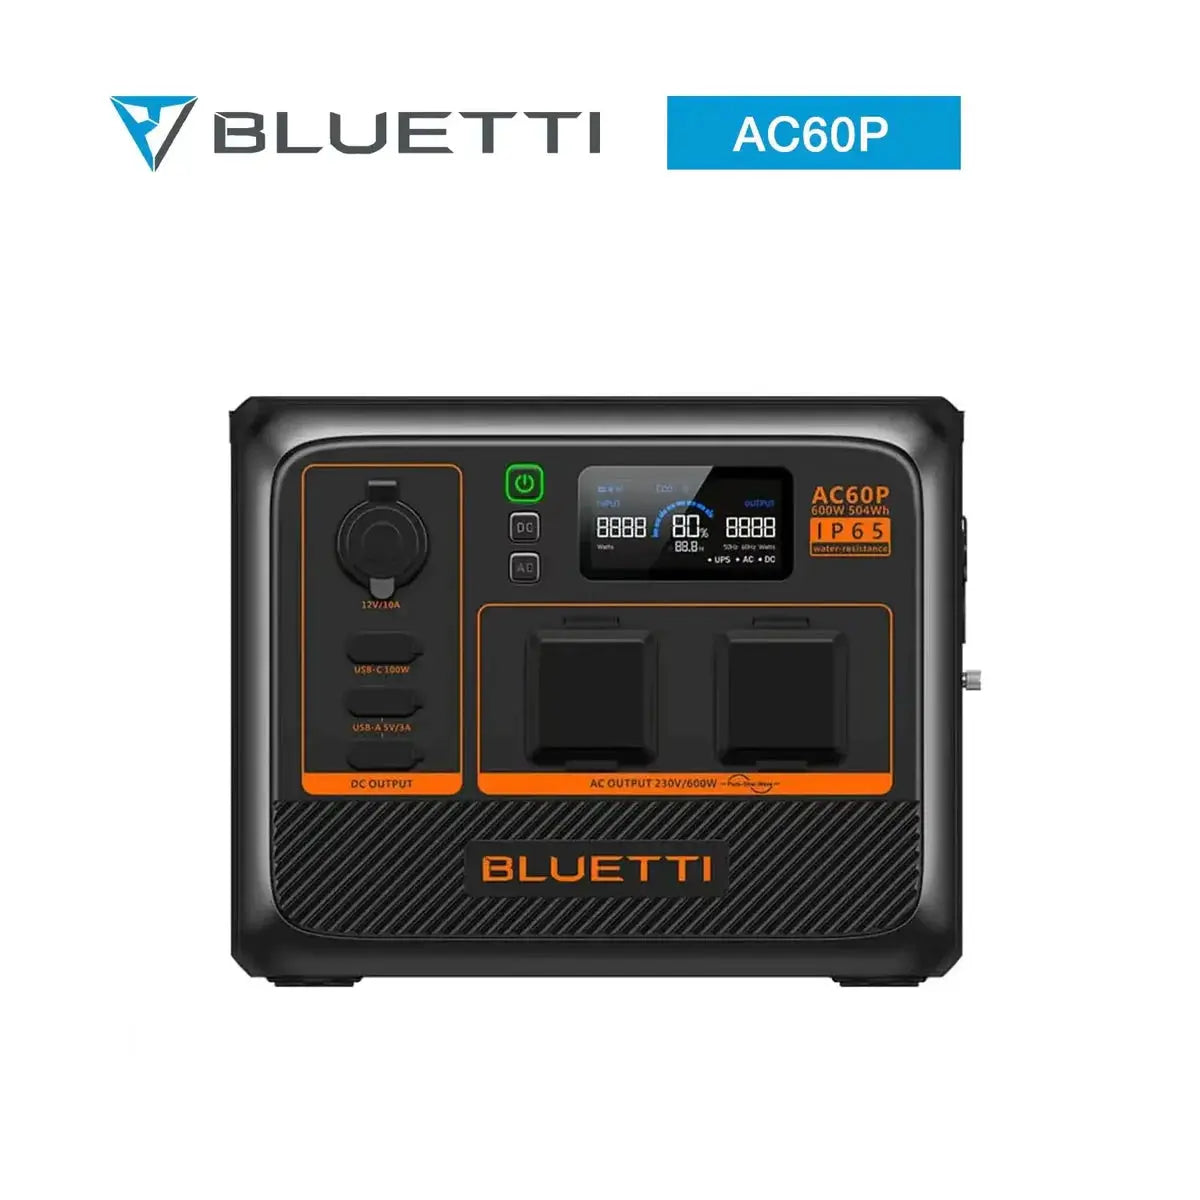 BLUETTI AC60P Portable Power Station| 600W| 403Wh BLUETTI